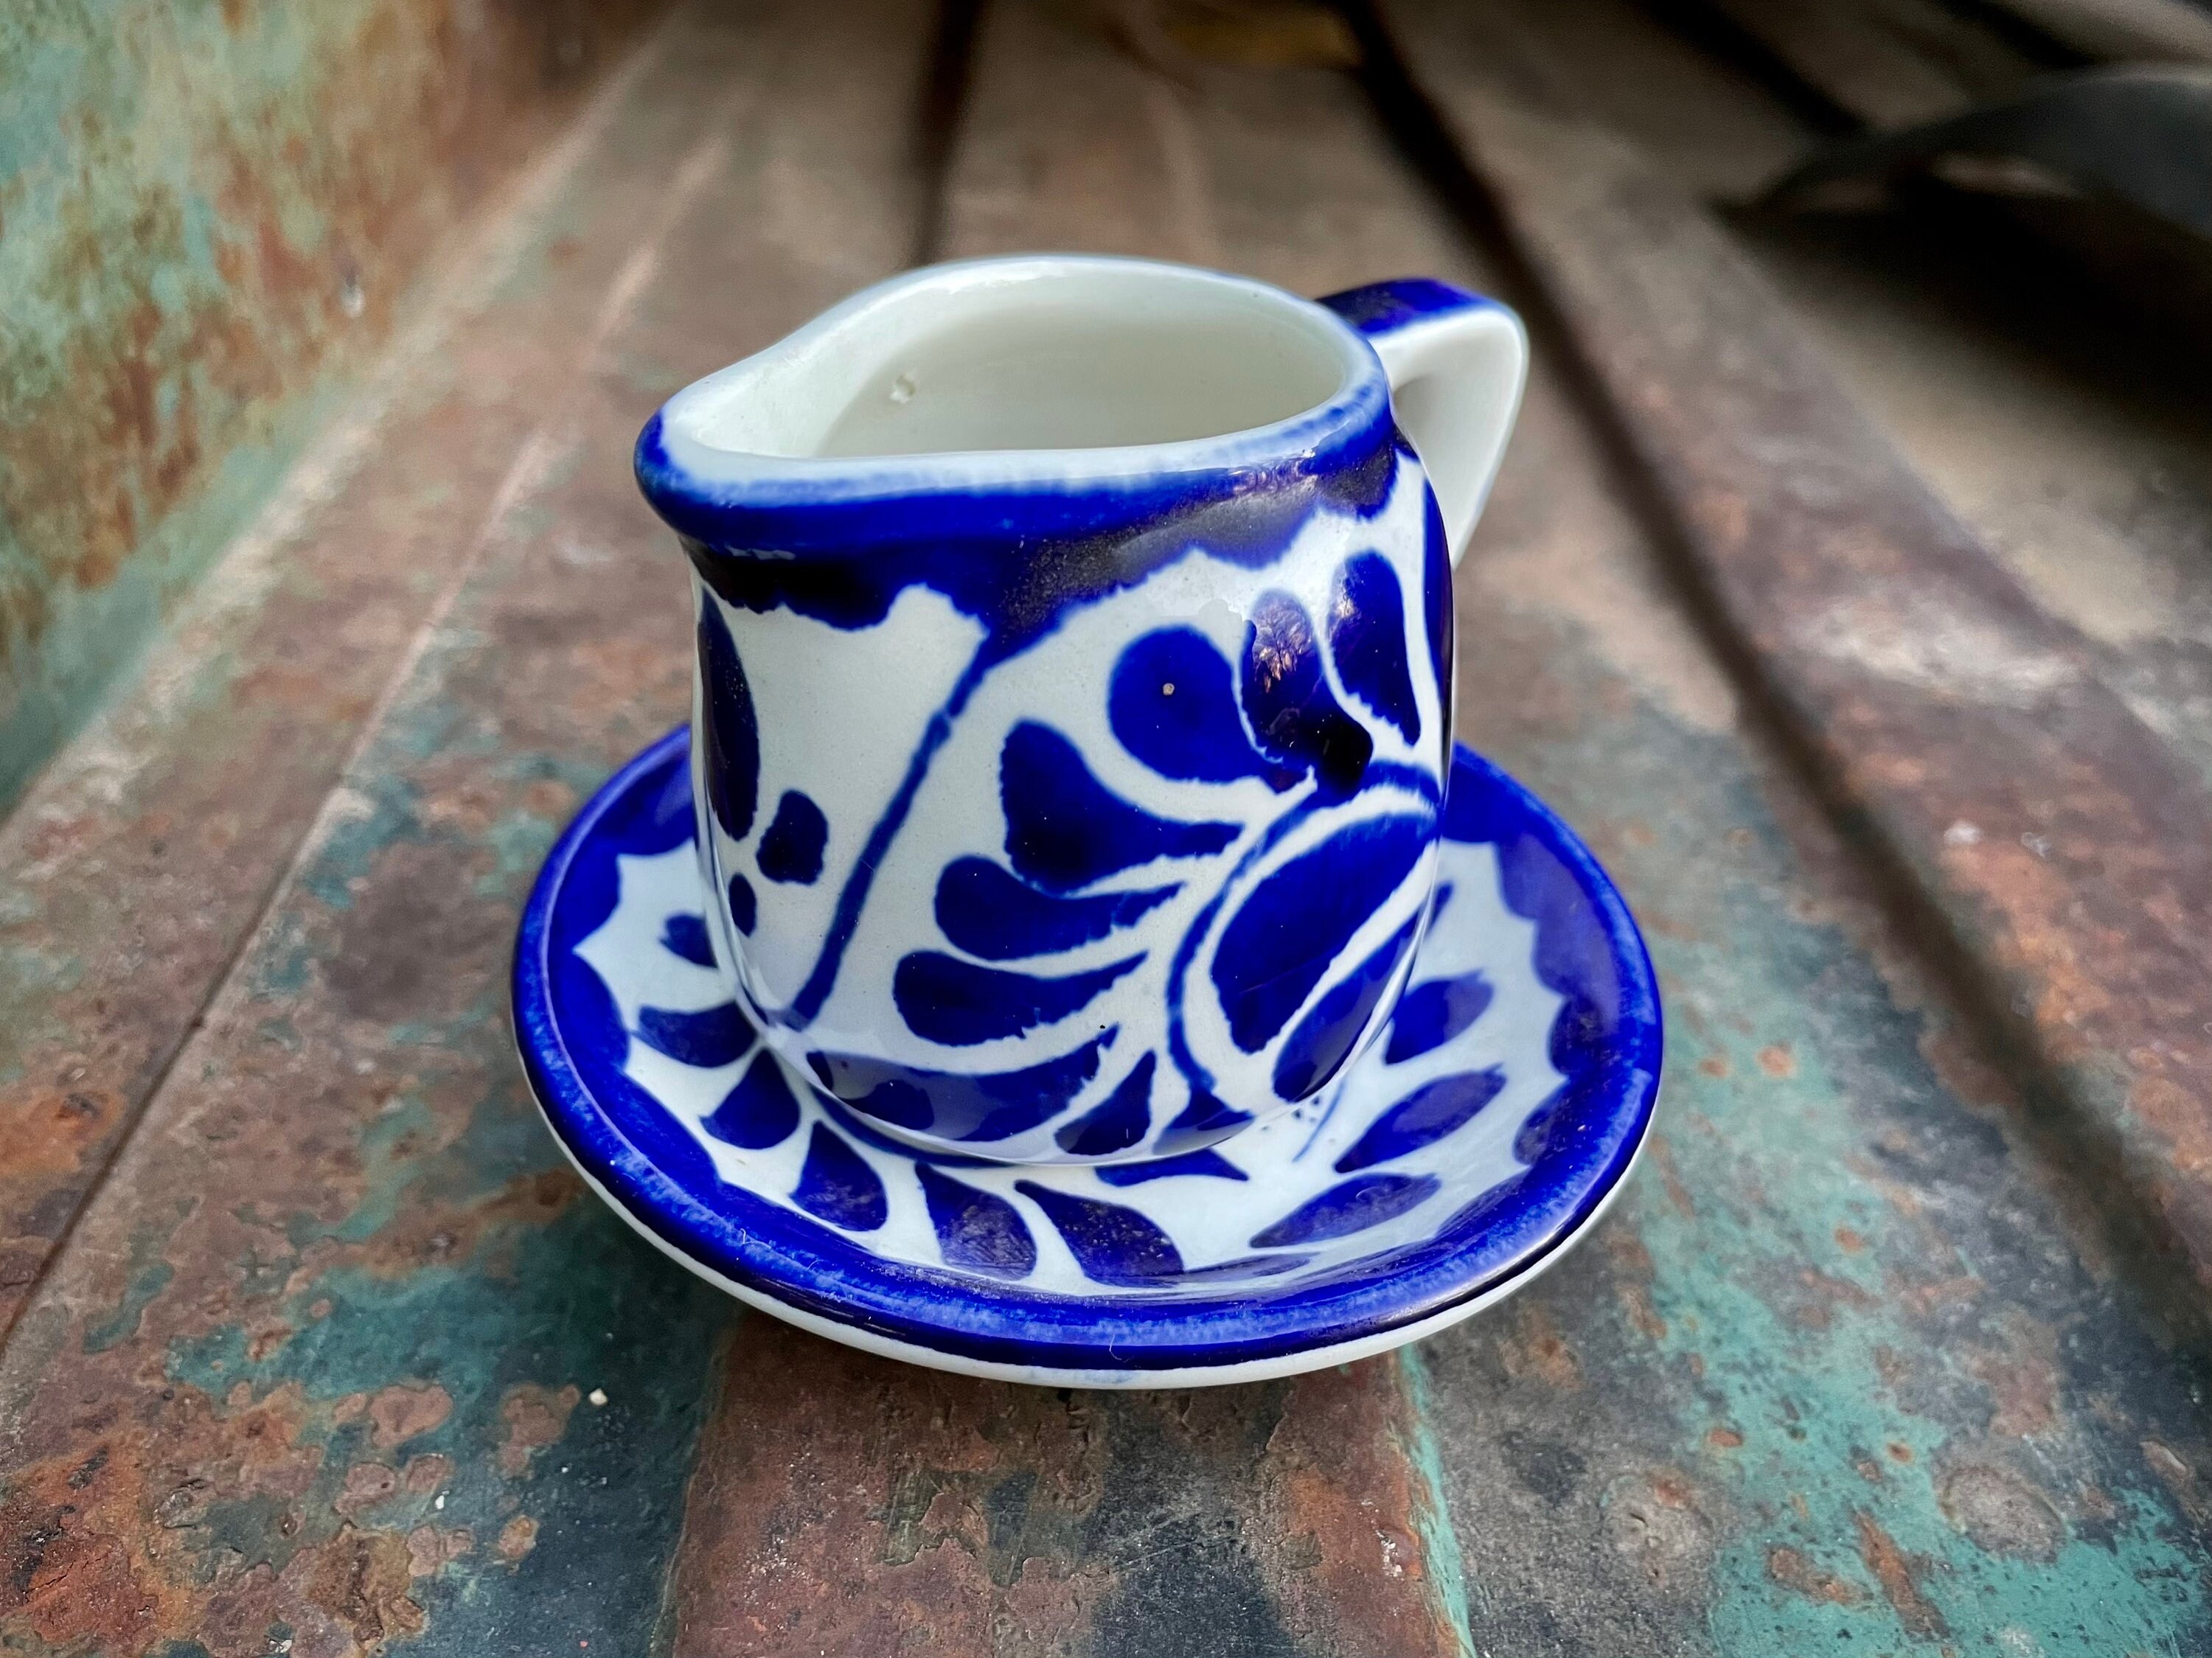 Puebla 10 oz mug from Anfora